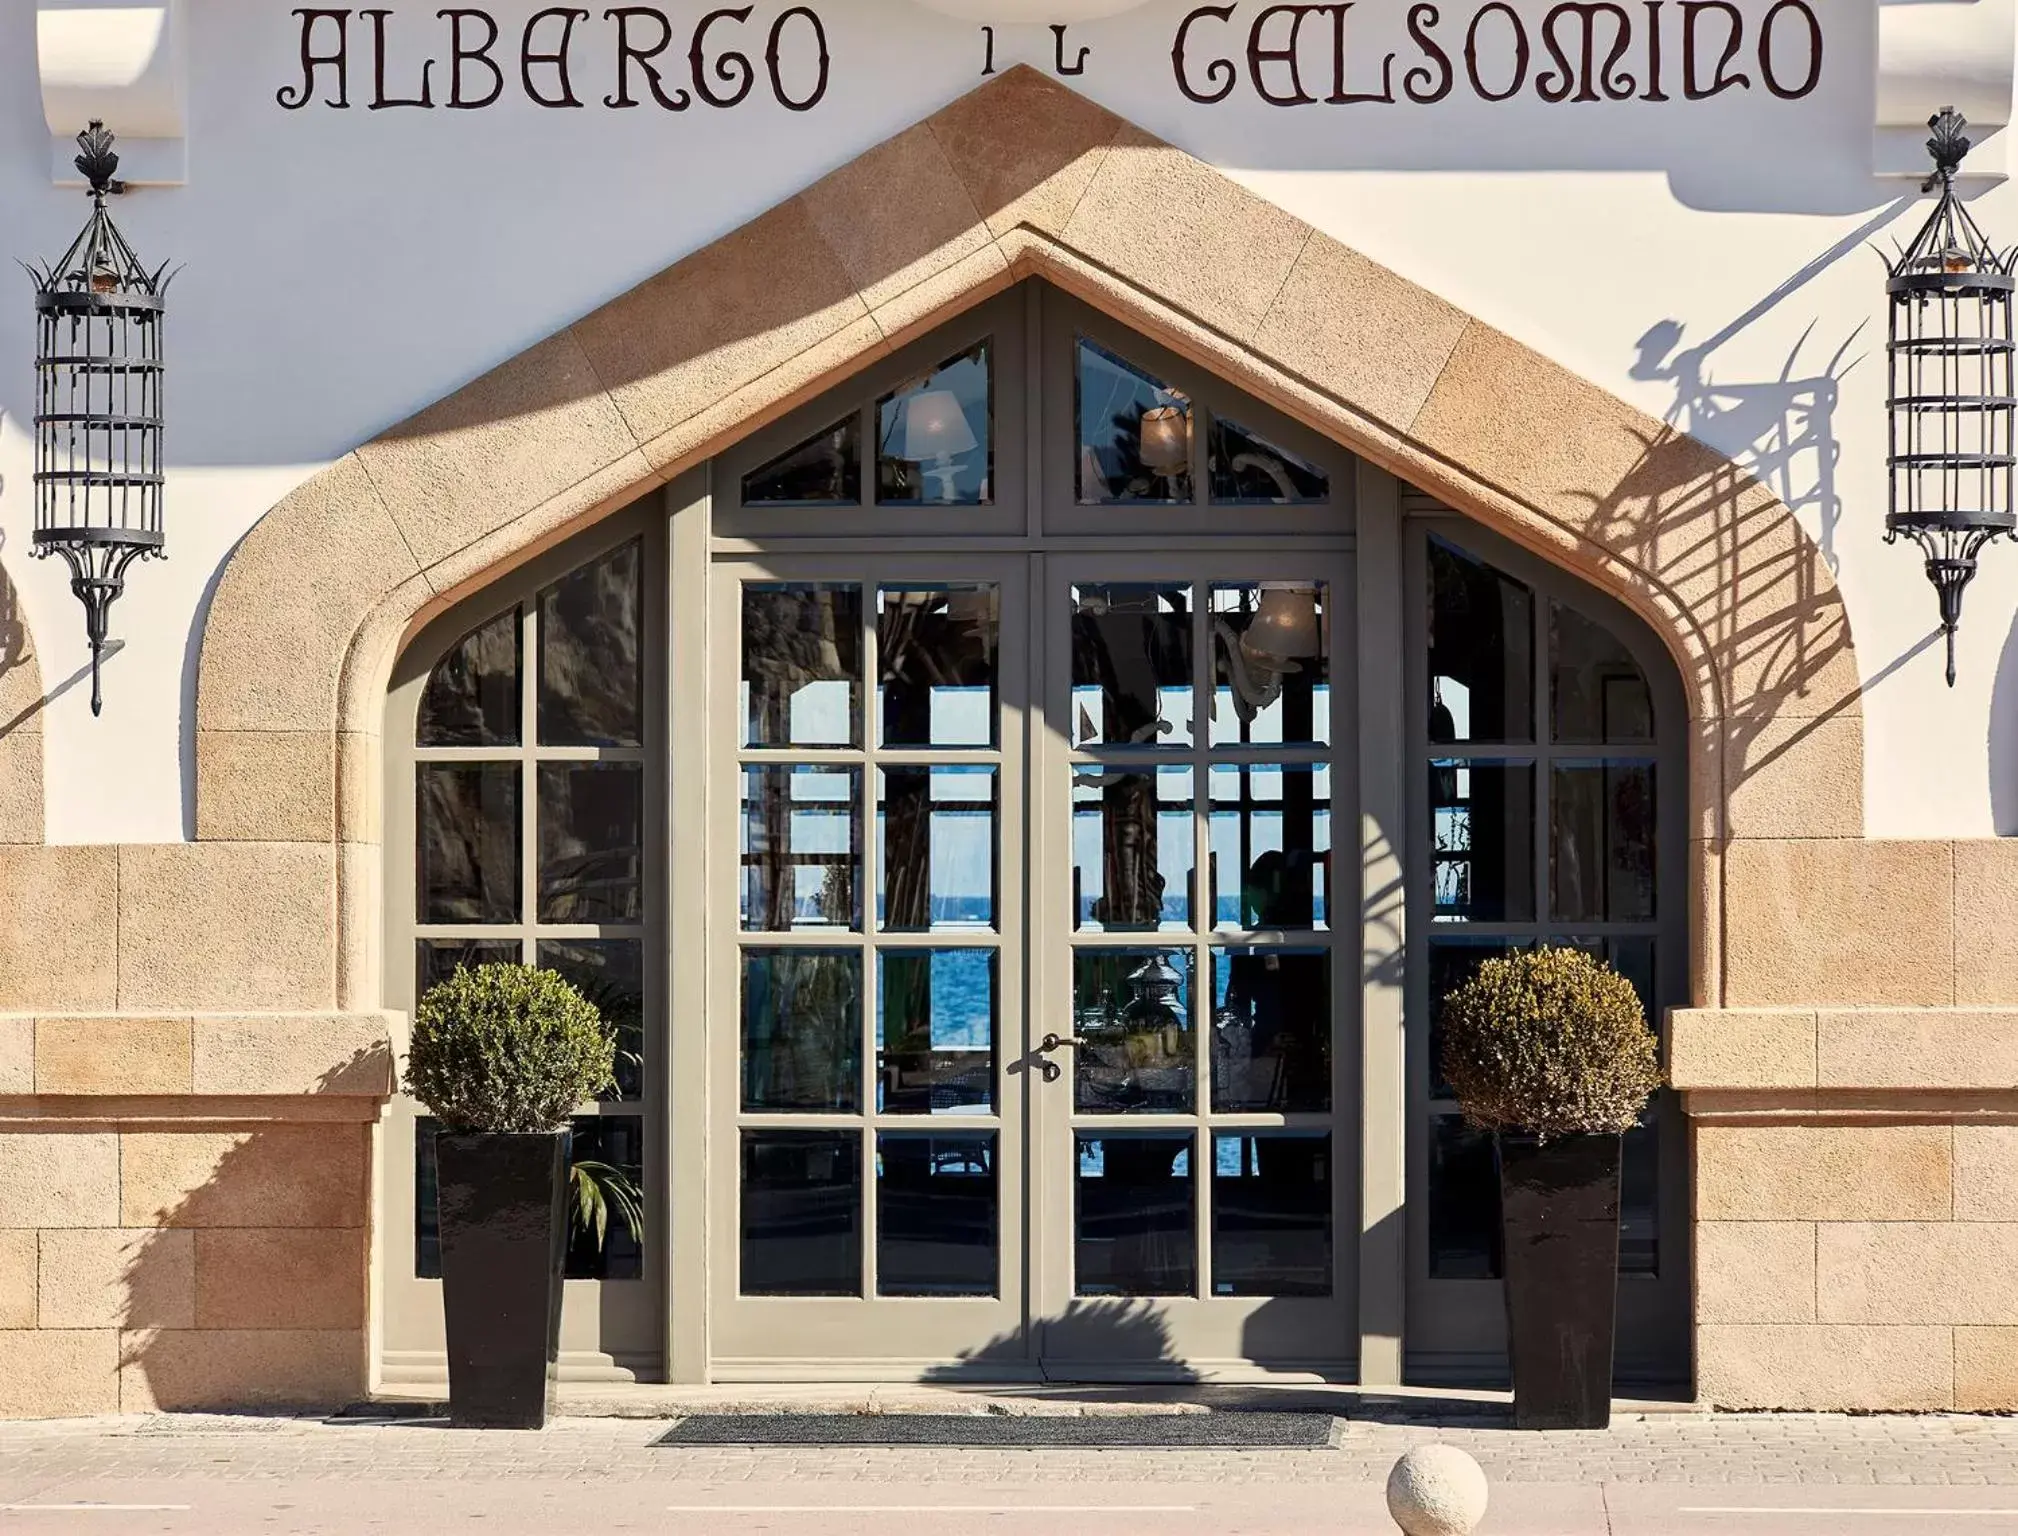 Facade/entrance in Albergo Gelsomino